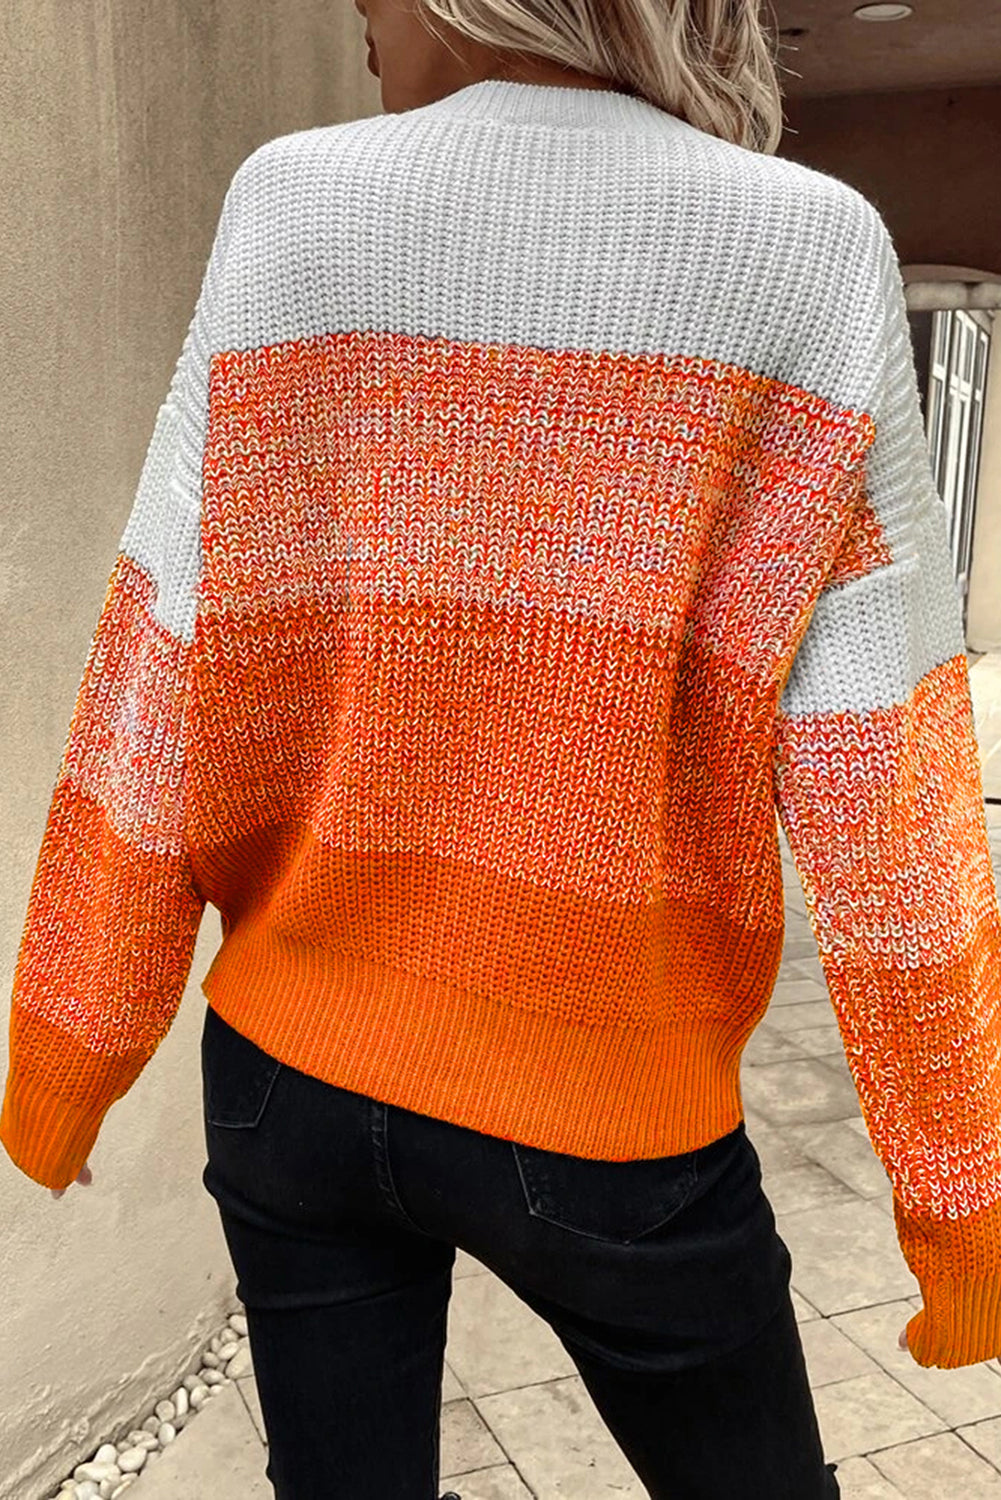 Pulover s rebrastim obrubom spuštenih ramena u narančastoj boji